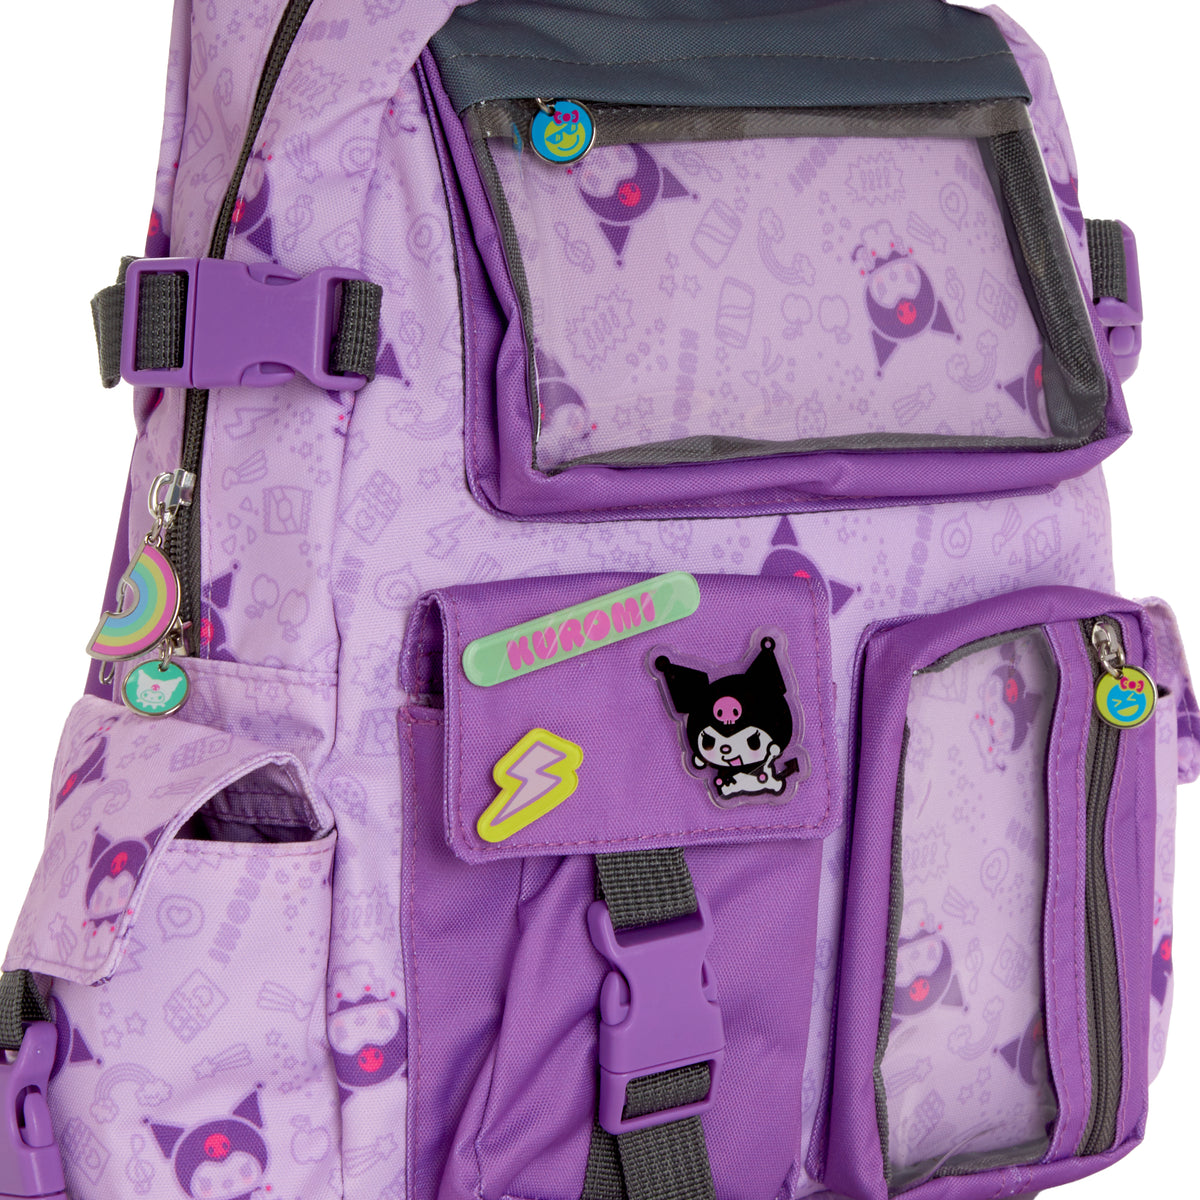 Kawai Sanrio Hello Kitty Messenger Bag Book Bag School Bag 